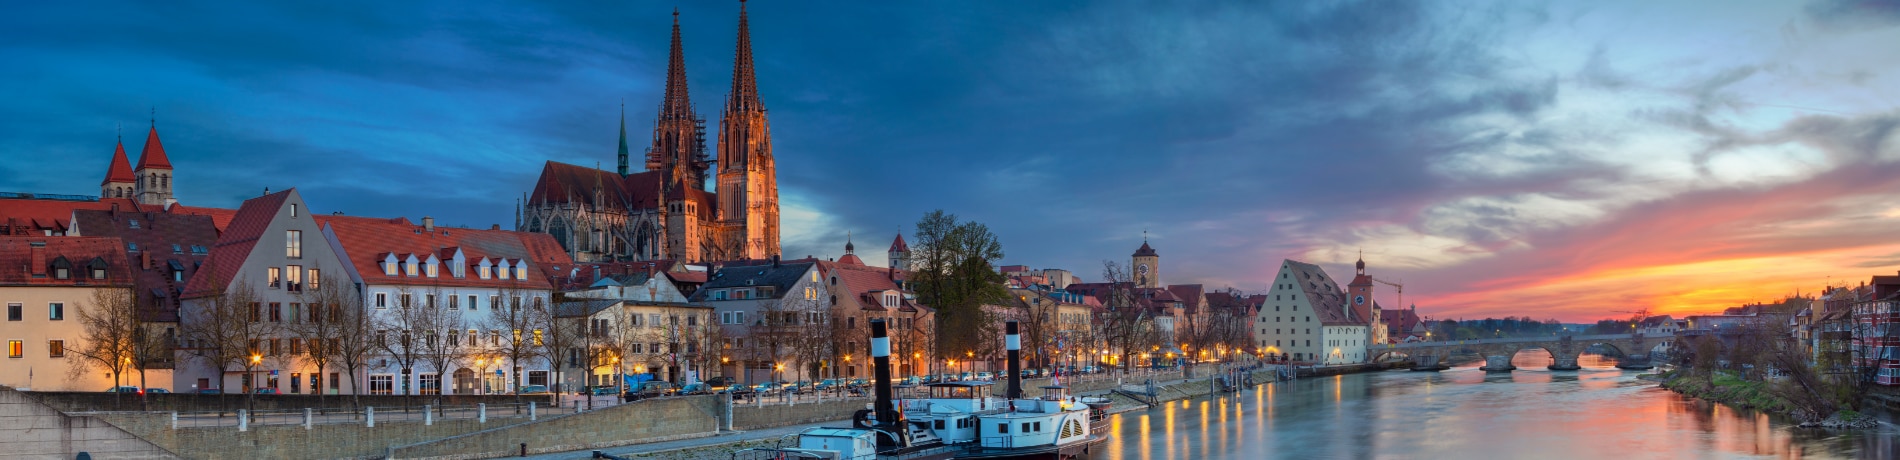 Città di Regensburg, Baviera, Germania | Eden viaggi